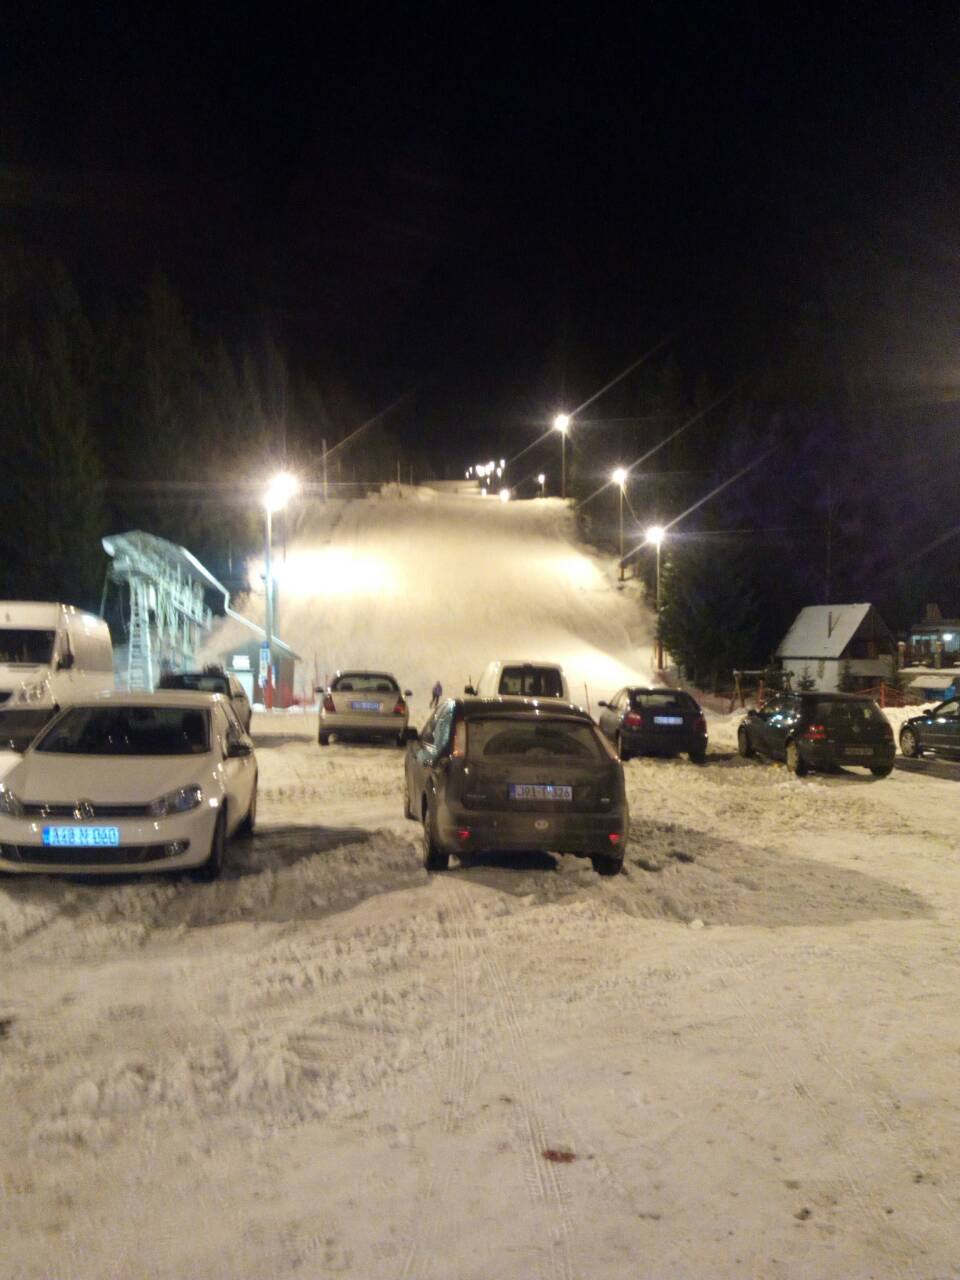 Preko vikenda dnevno i noćno skijanje – Posjetite Ski centar Ponijeri